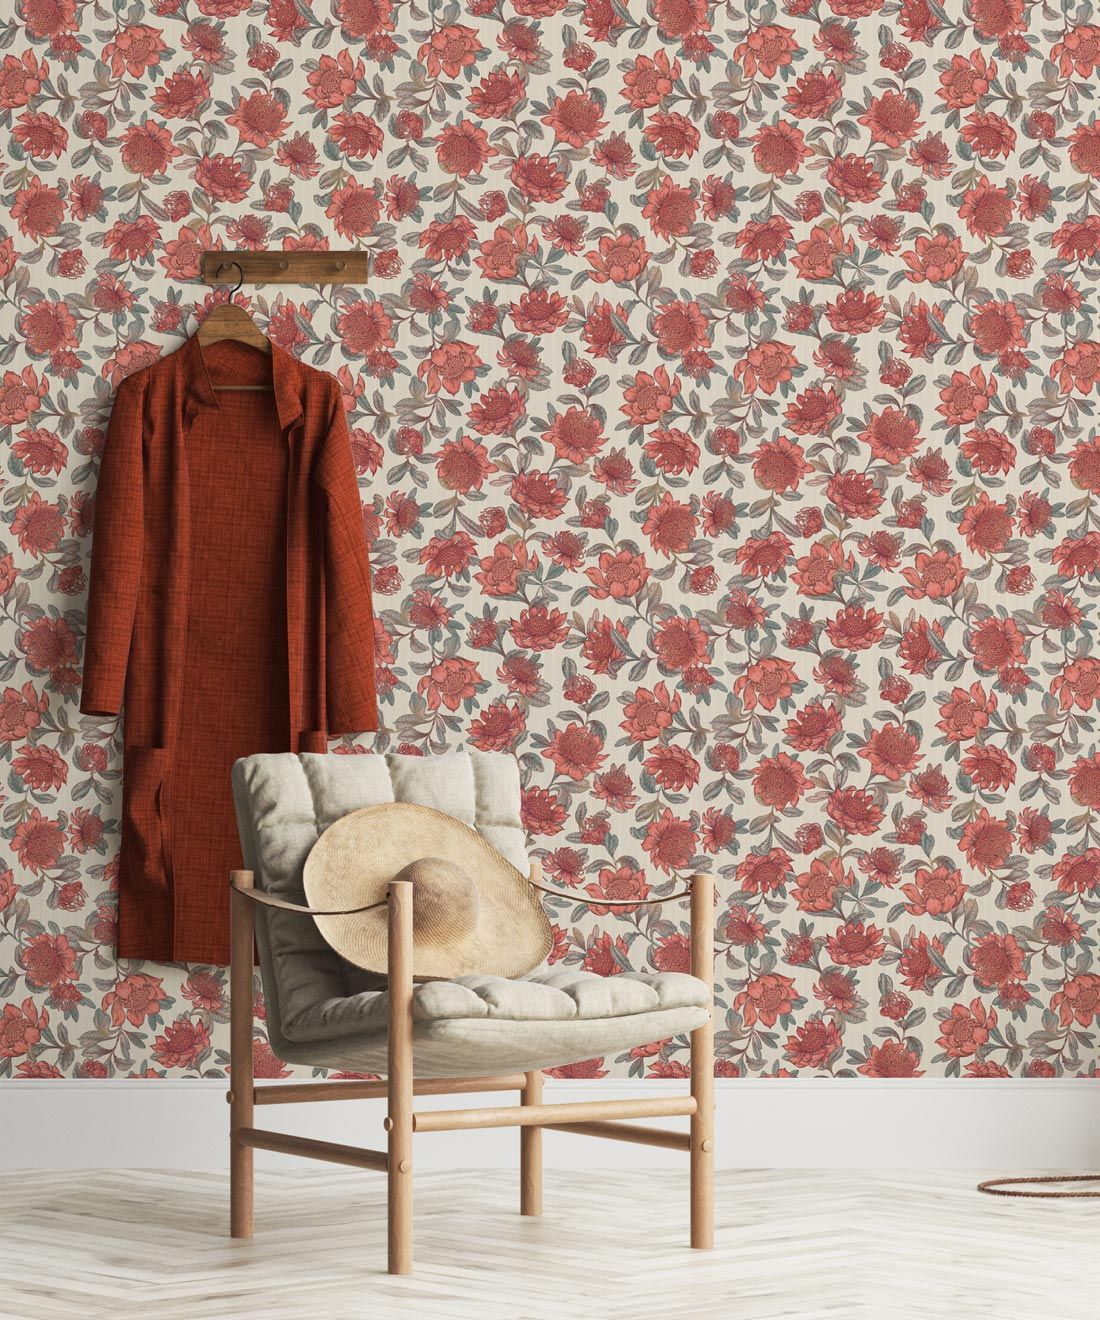 Waratah Wallpaper • Eloise Short • Vintage Floral Wallpaper • Granny Chic Wallpaper • Grandmillennial Style Wallpaper • Parchment • Insitu